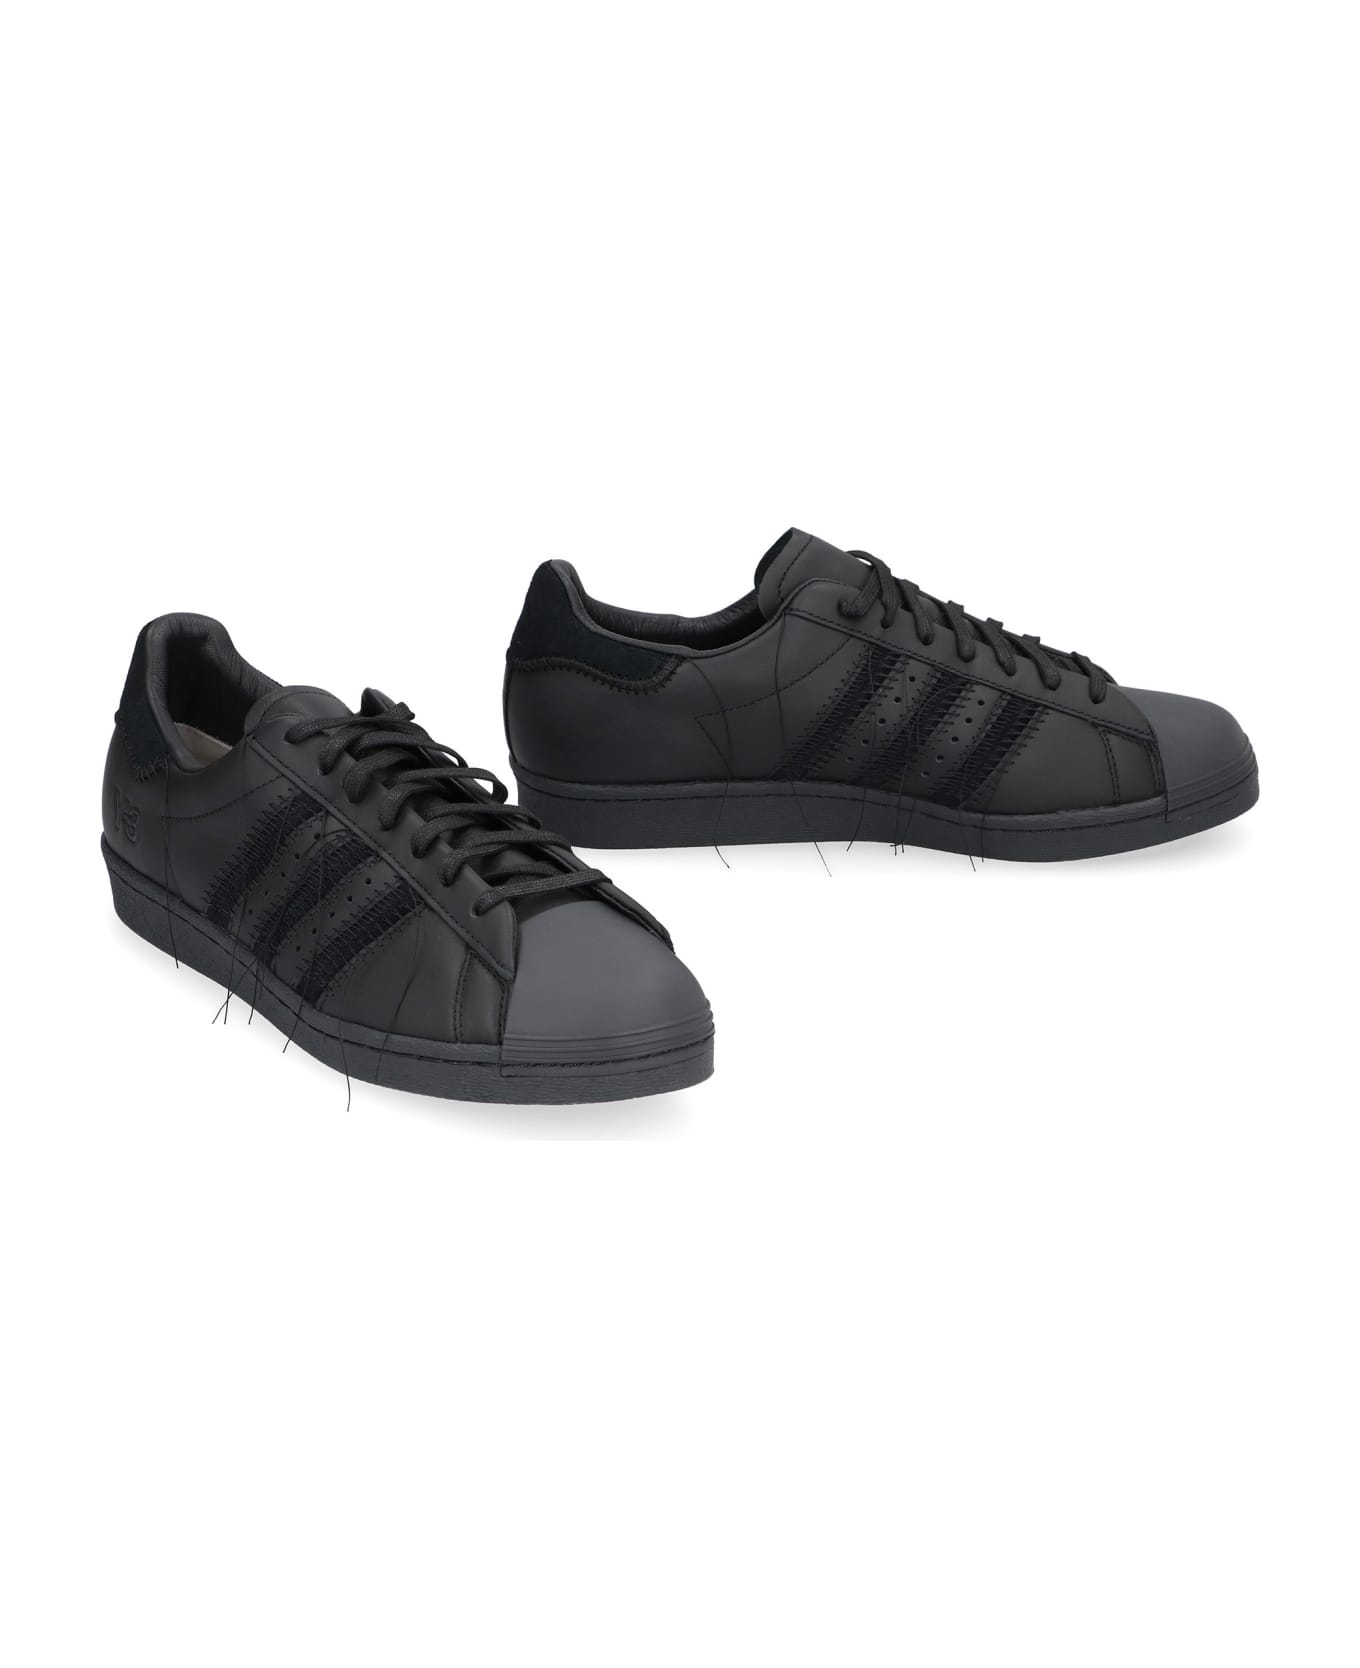 Y-3 Superstar Leather Low-top Sneakers - Black